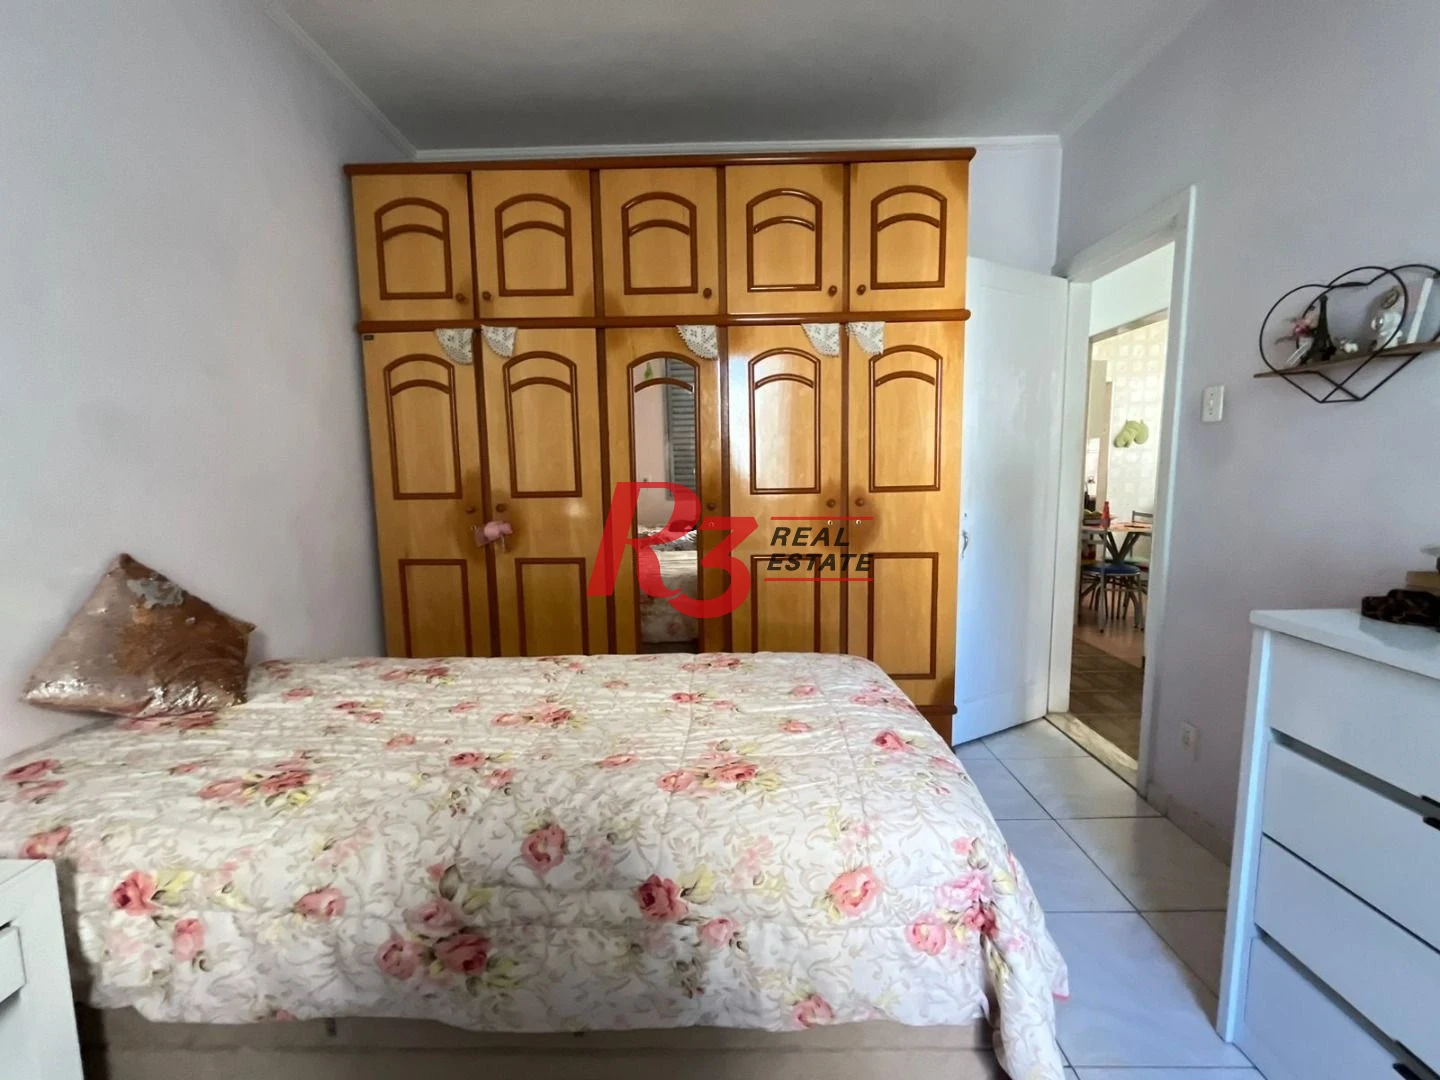 Apartamento à venda, 68 m² por R$ 290.000,00 - Aparecida - Santos/SP